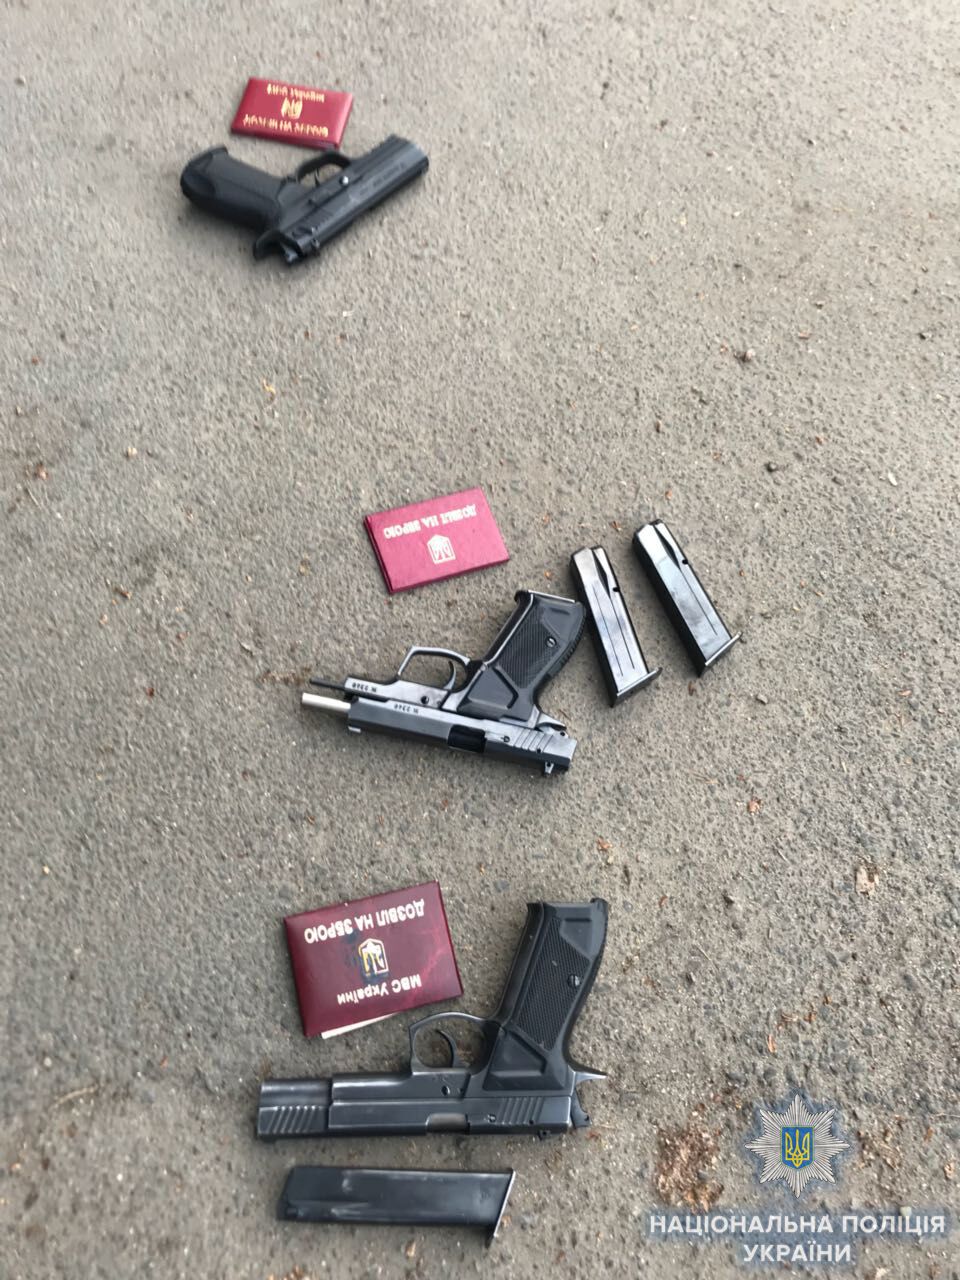 Кидали гранати: в Одесі влаштували стрілянину, є поранені